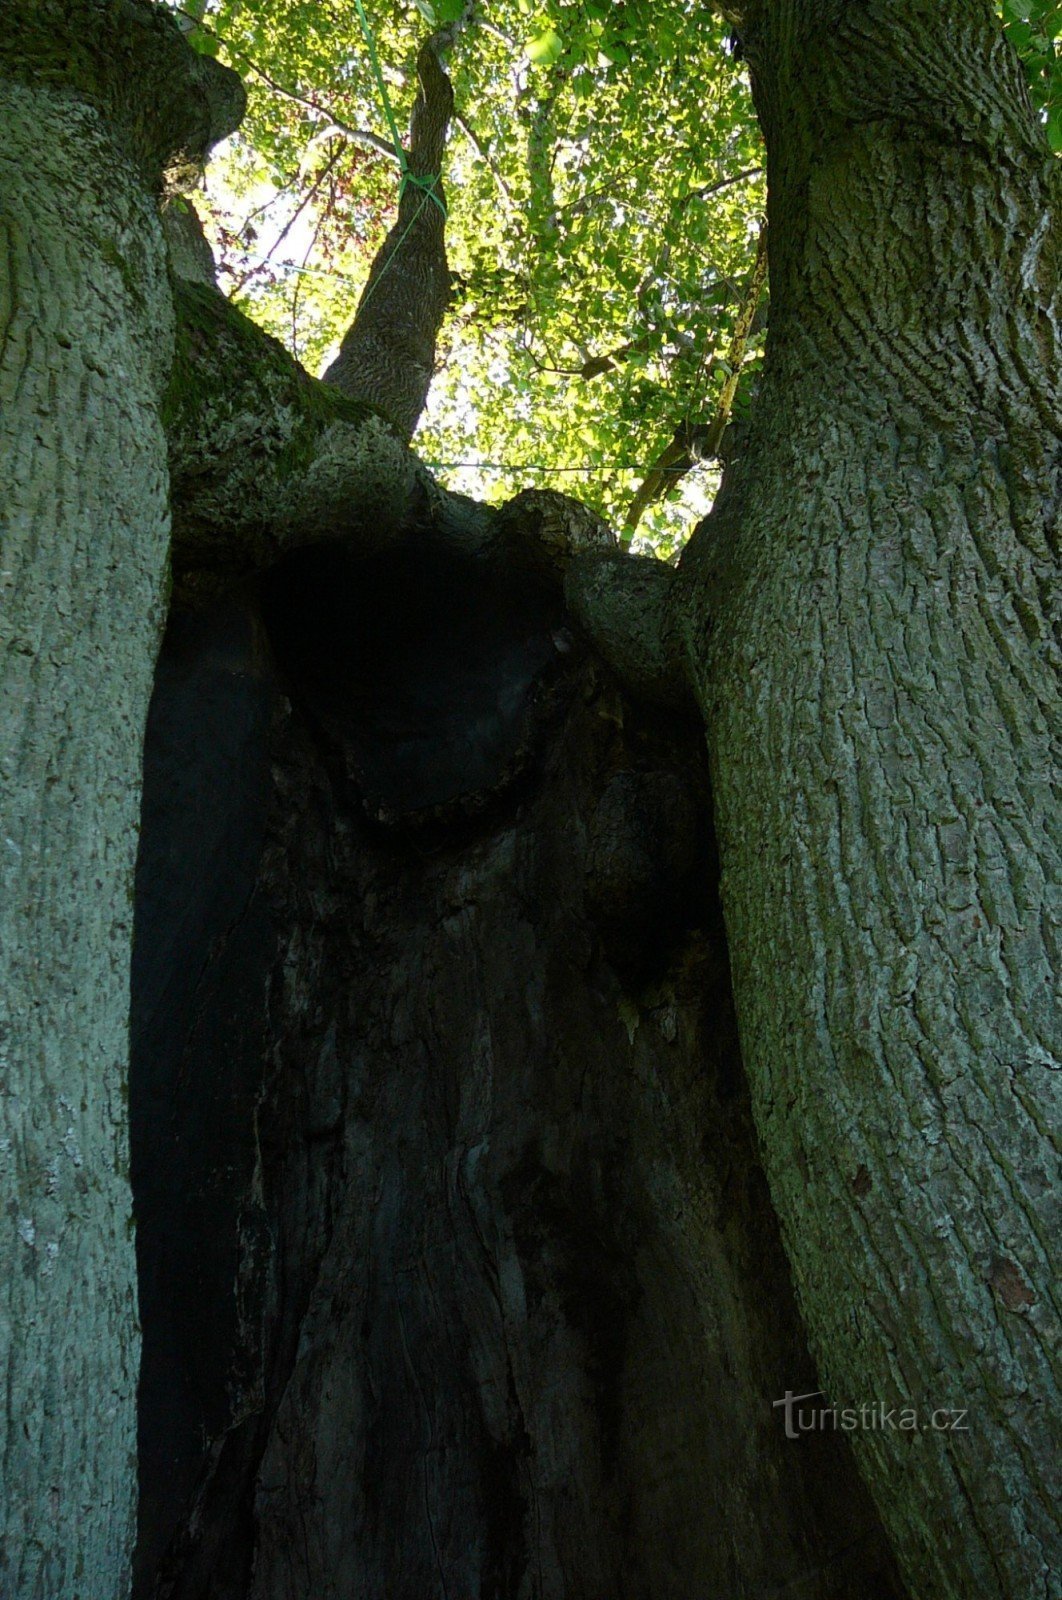 Spaljena šupljina unutar debla